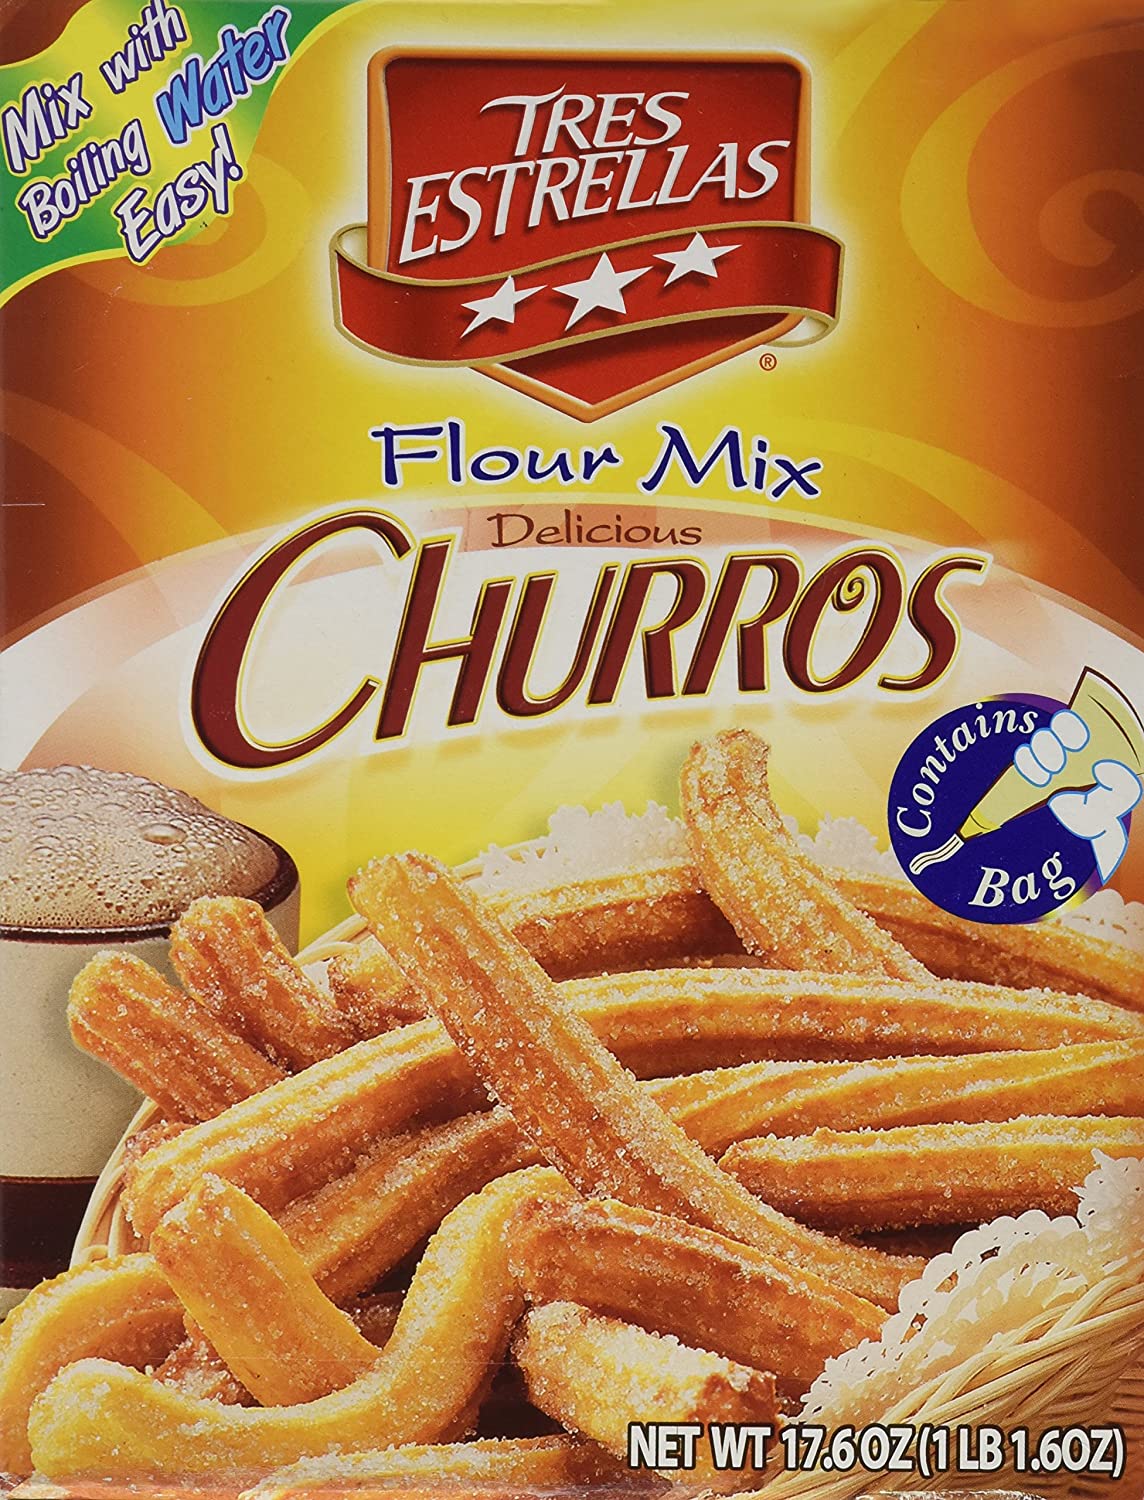 Churros flour mix